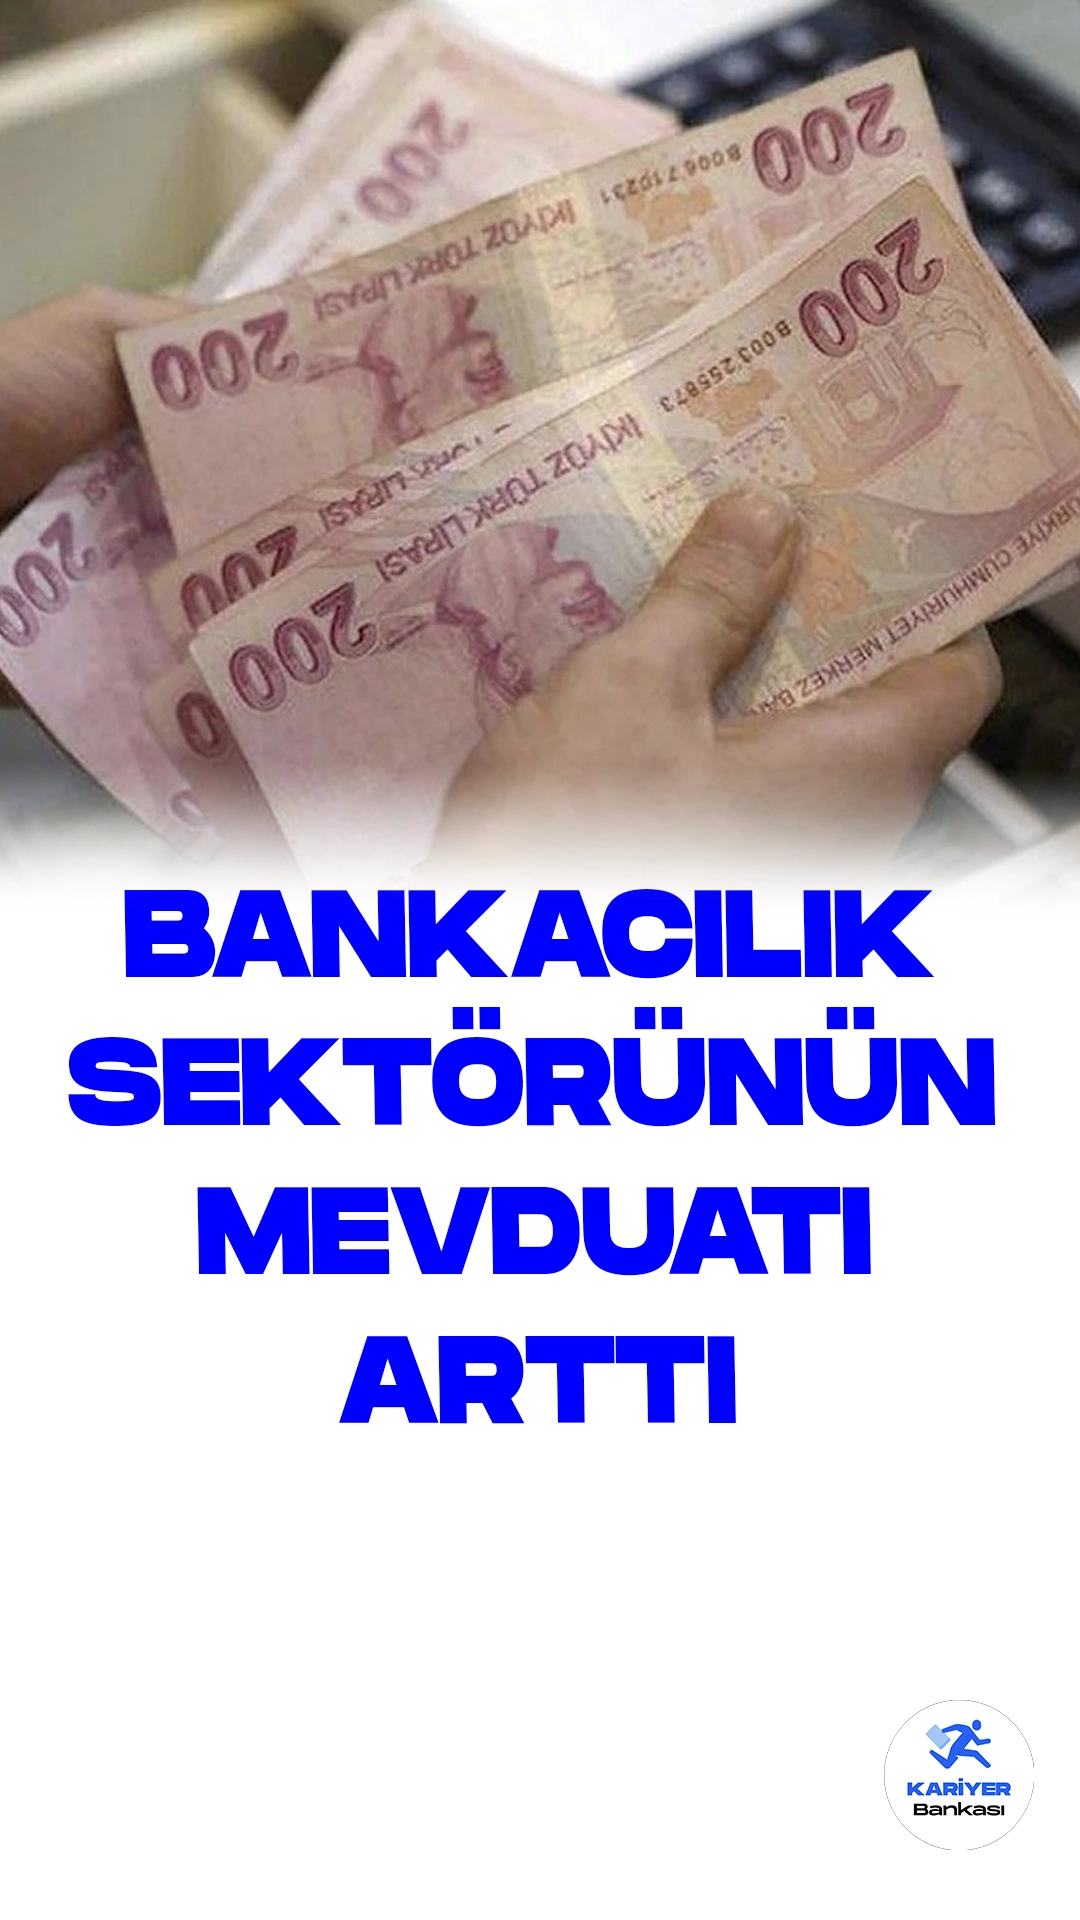 Bankacılık Sektörünün Toplam Mevduatı Rekor Bir Artışla 13.7 Trilyon Liraya Ulaştı.Türkiye'nin bankacılık sektörü, son haftada 25.9 milyar lira artışla toplam mevduatı 13 trilyon 717.6 milyar lira seviyesine taşıdı. Türkiye Cumhuriyet Merkez Bankası (TCMB), haftalık para ve banka istatistiklerini kamuoyuna duyurdu.